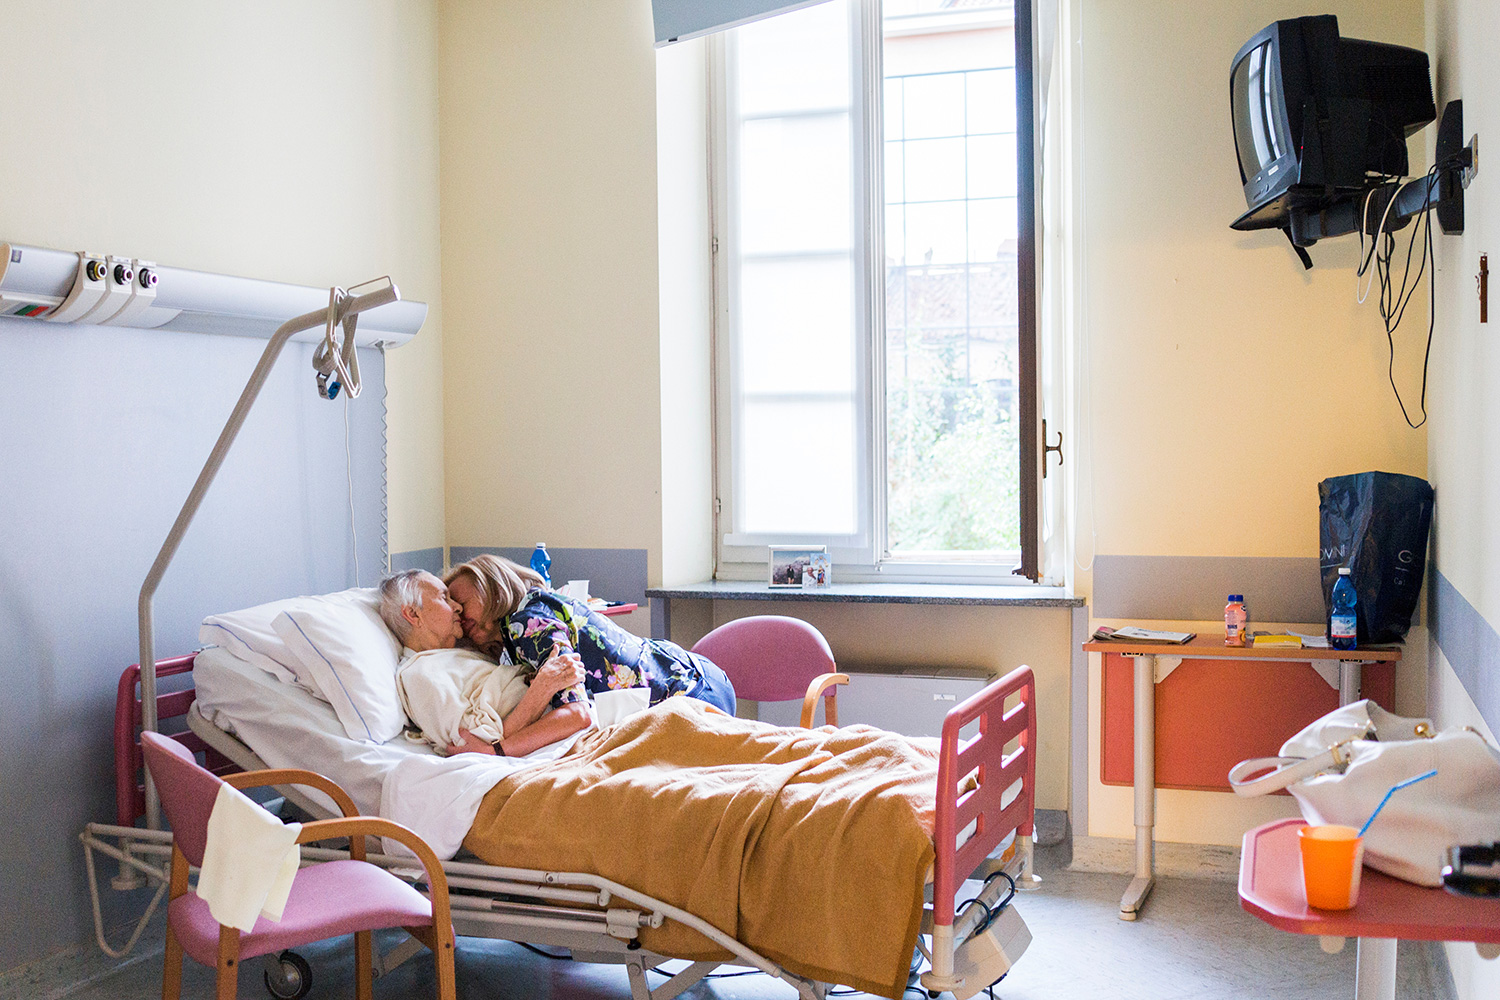 Chiara Micheletti abraza a su madre en la habitación de un hospital donde permaneció el último mes y medio de su vida (Gaia Squarci/Reuters)